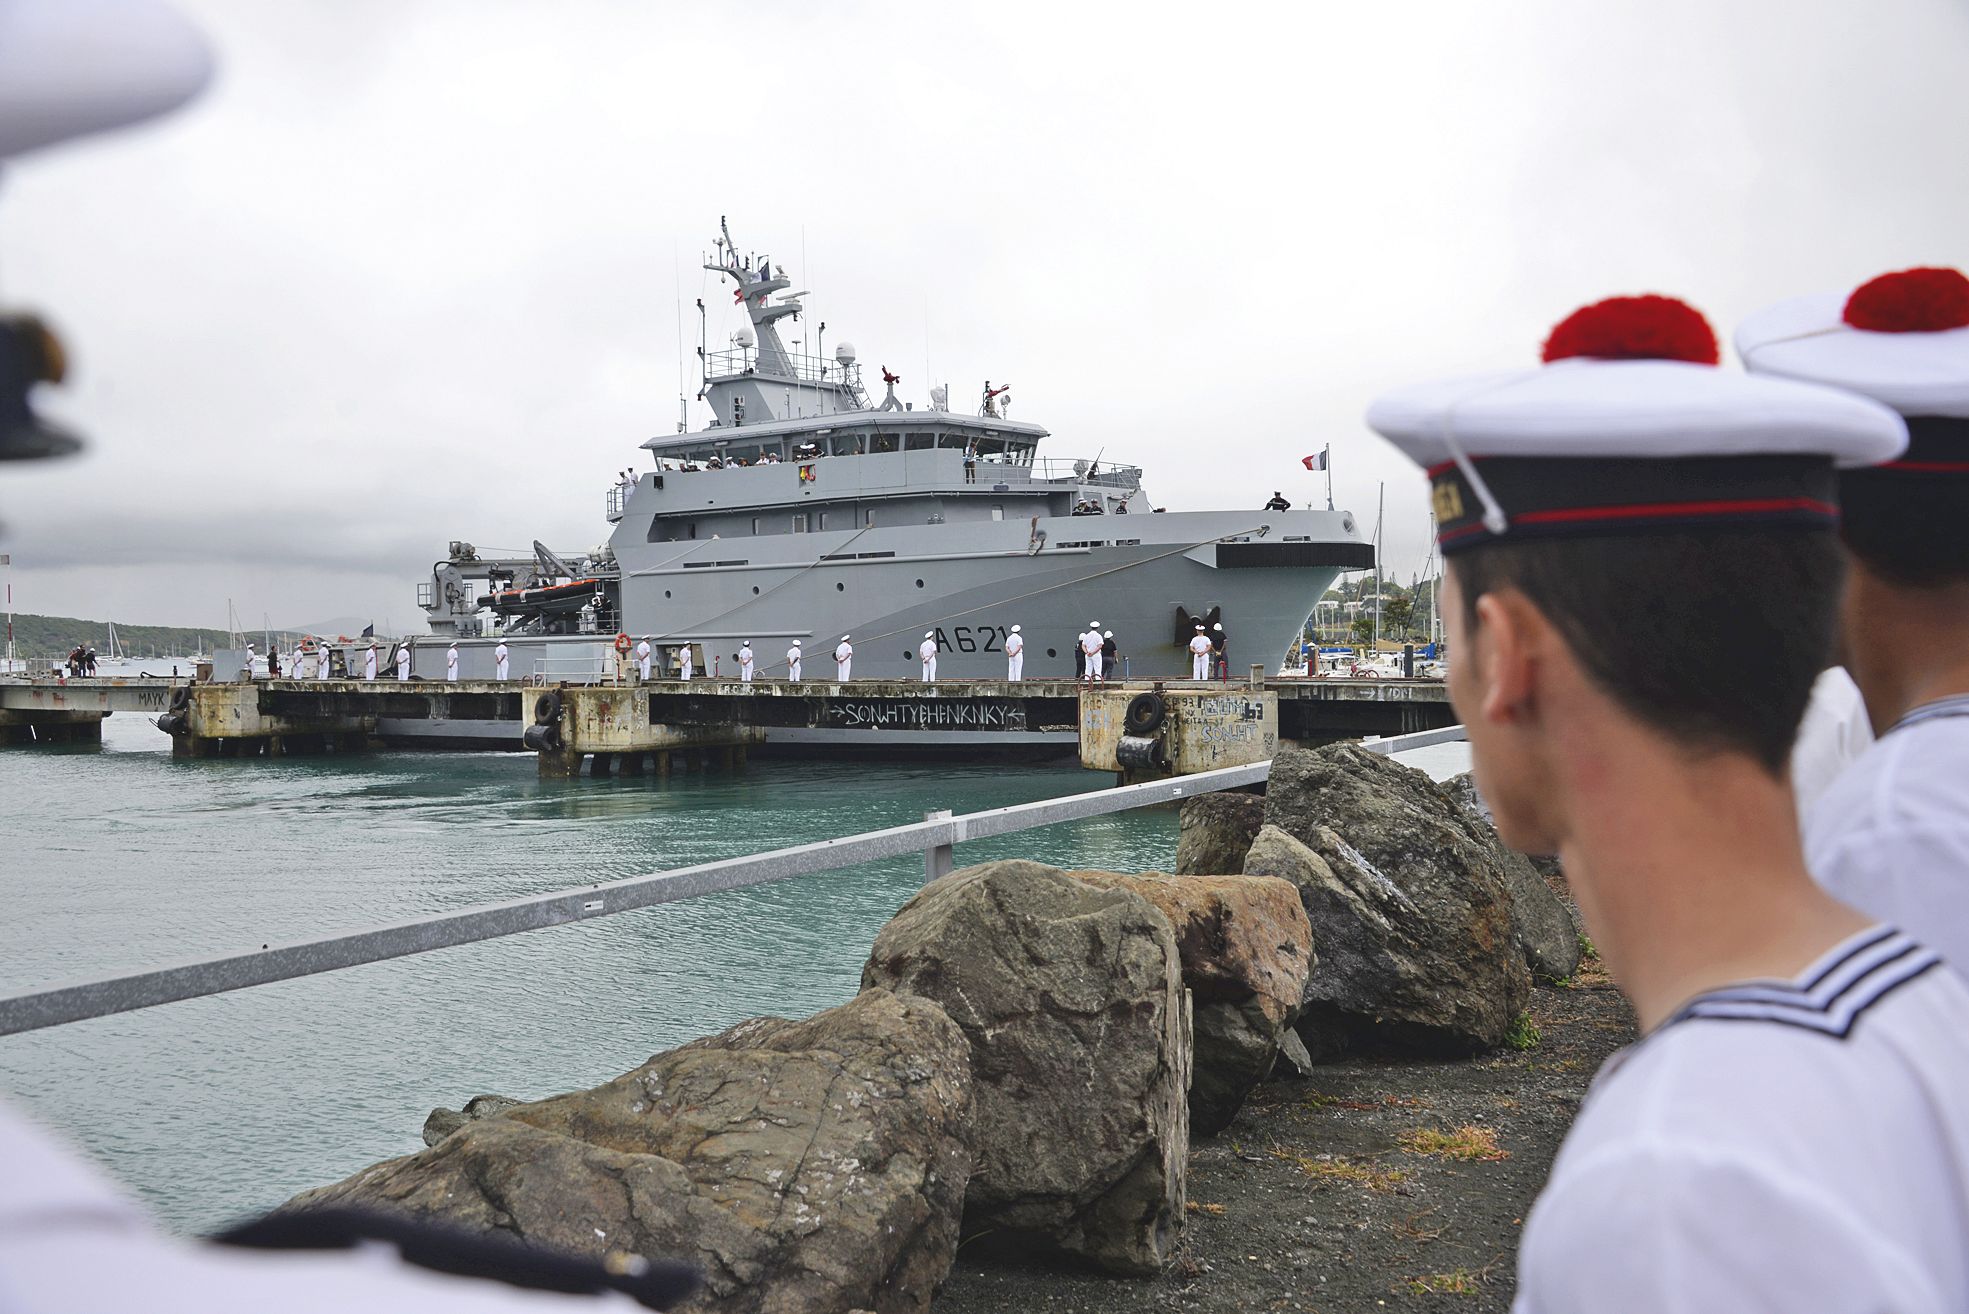 Parti de Brest le 11 mai, le d’Entrecasteaux a fait une entrée spectaculaire dans le port de Nouméa, hier, après avoir parcouru 26 000 kilomètres, en neuf escales.